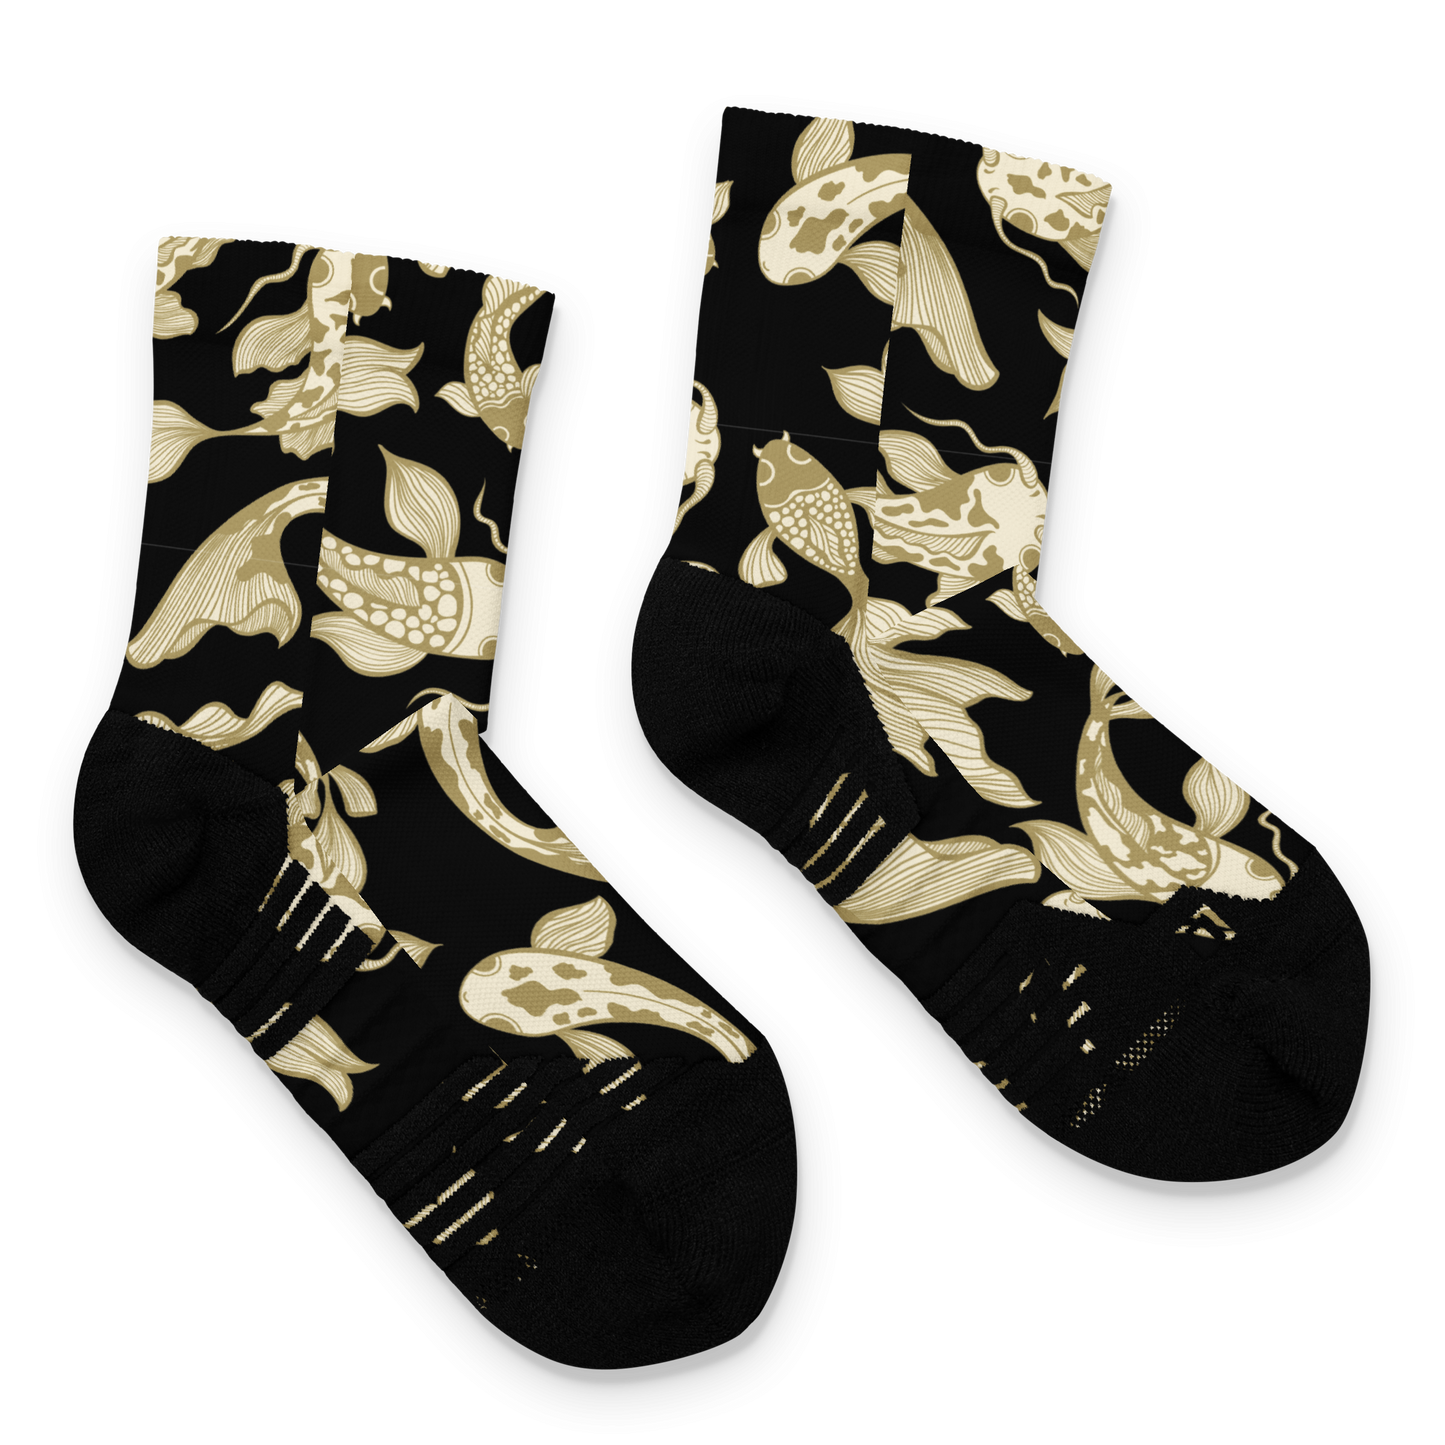 B/G Koi Ankle socks